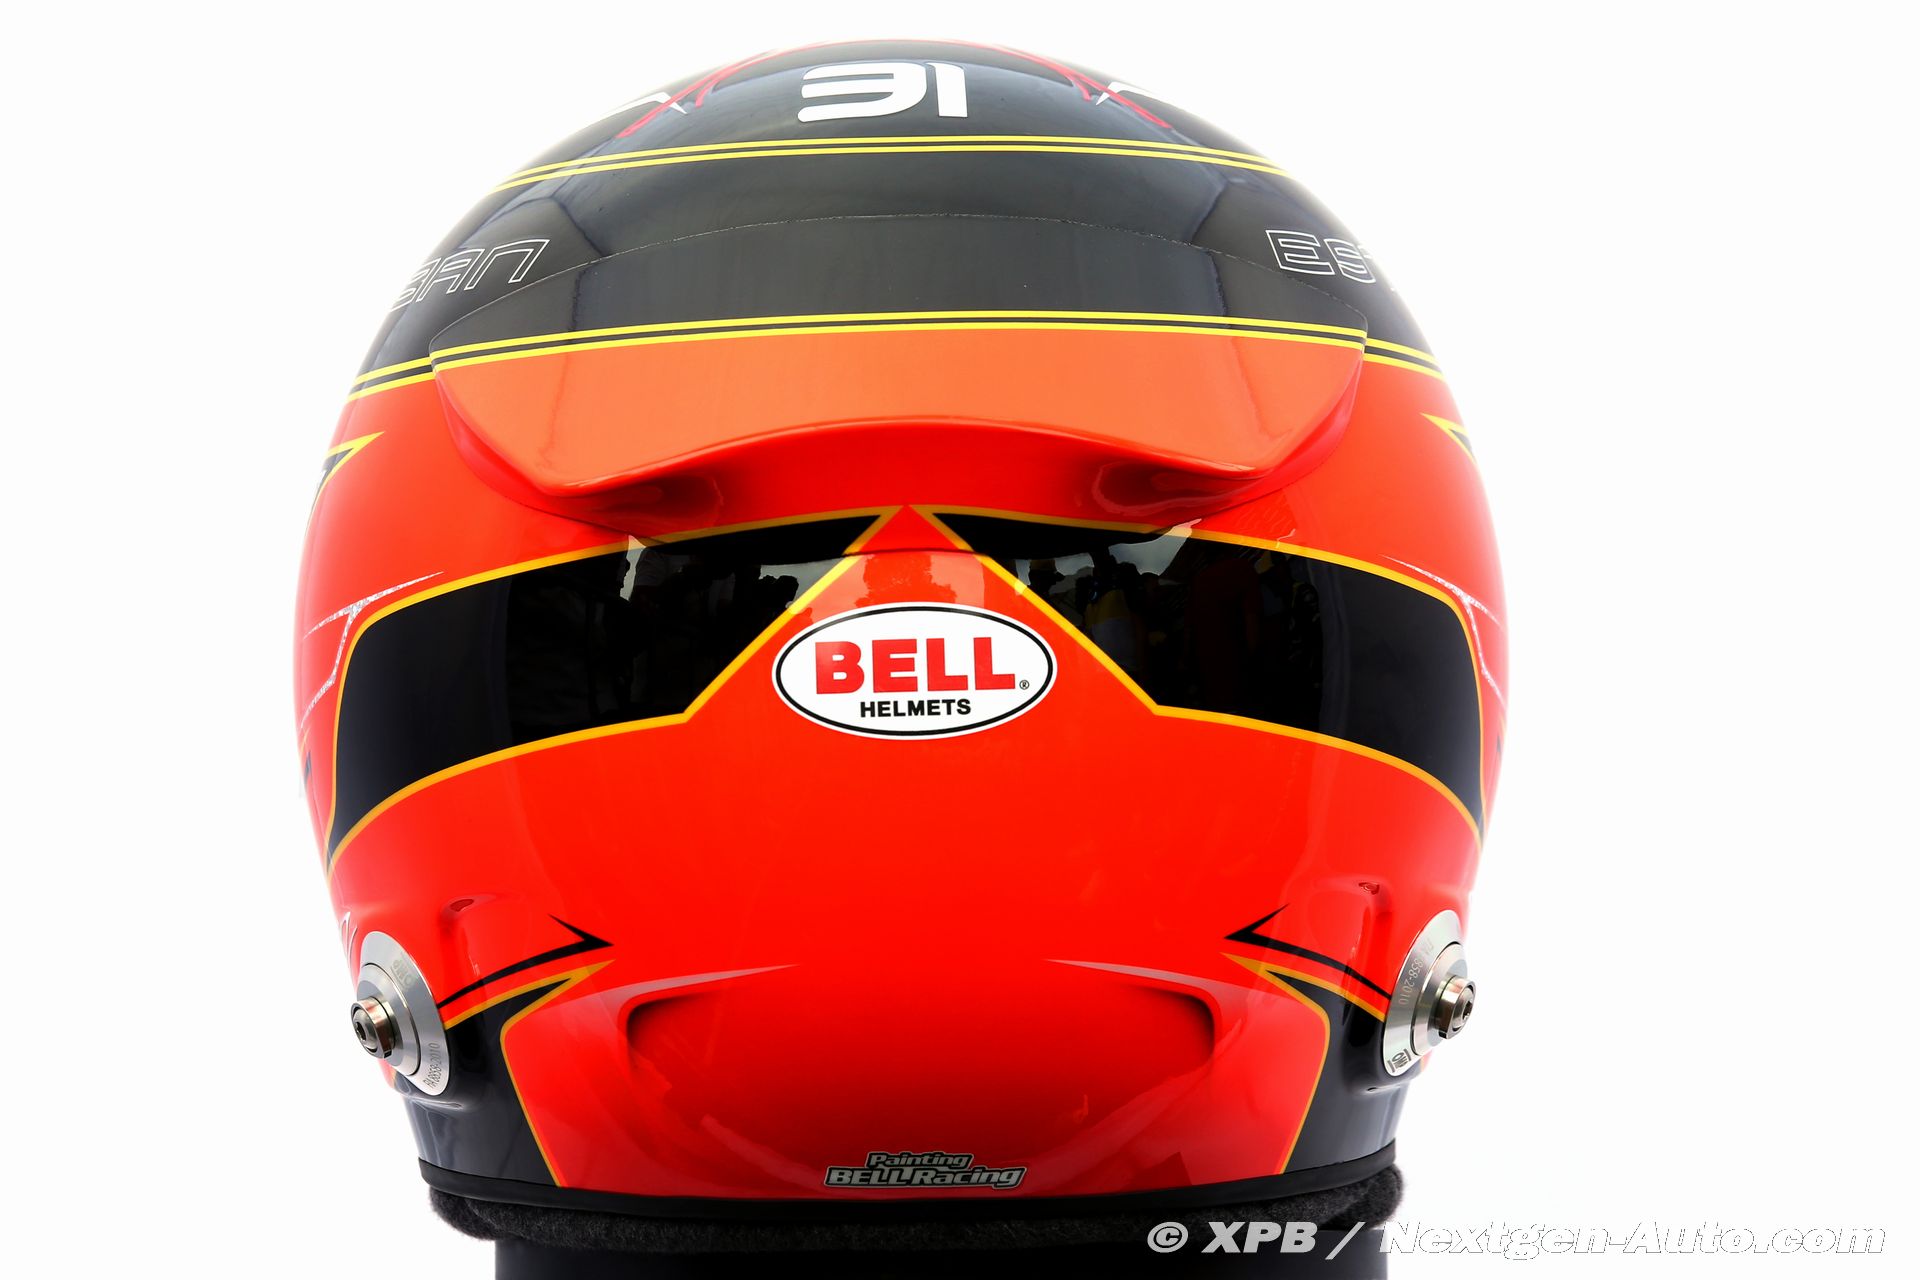 エステバン・オコン ヘルメット写真 レーシングスーツ写真 2020年F1